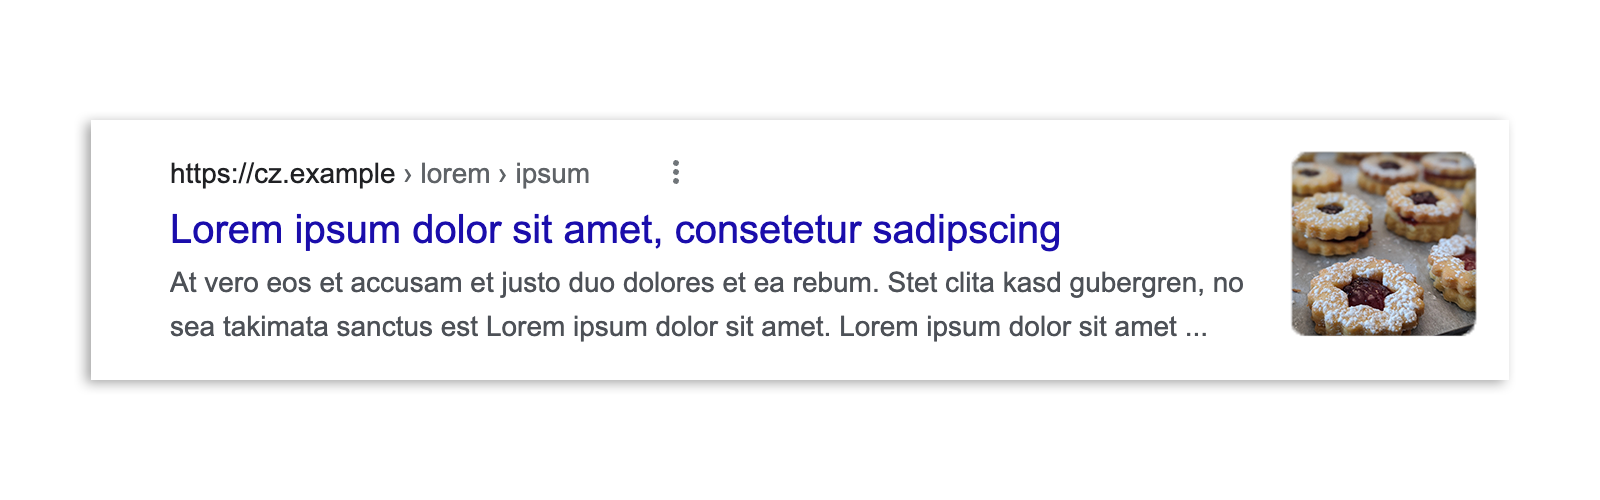 Resultado de la Búsqueda de Google en República Checa antes de la aplicación de la ley. Se muestra un fragmento del artículo, una vista previa de la imagen, el título y la URL.